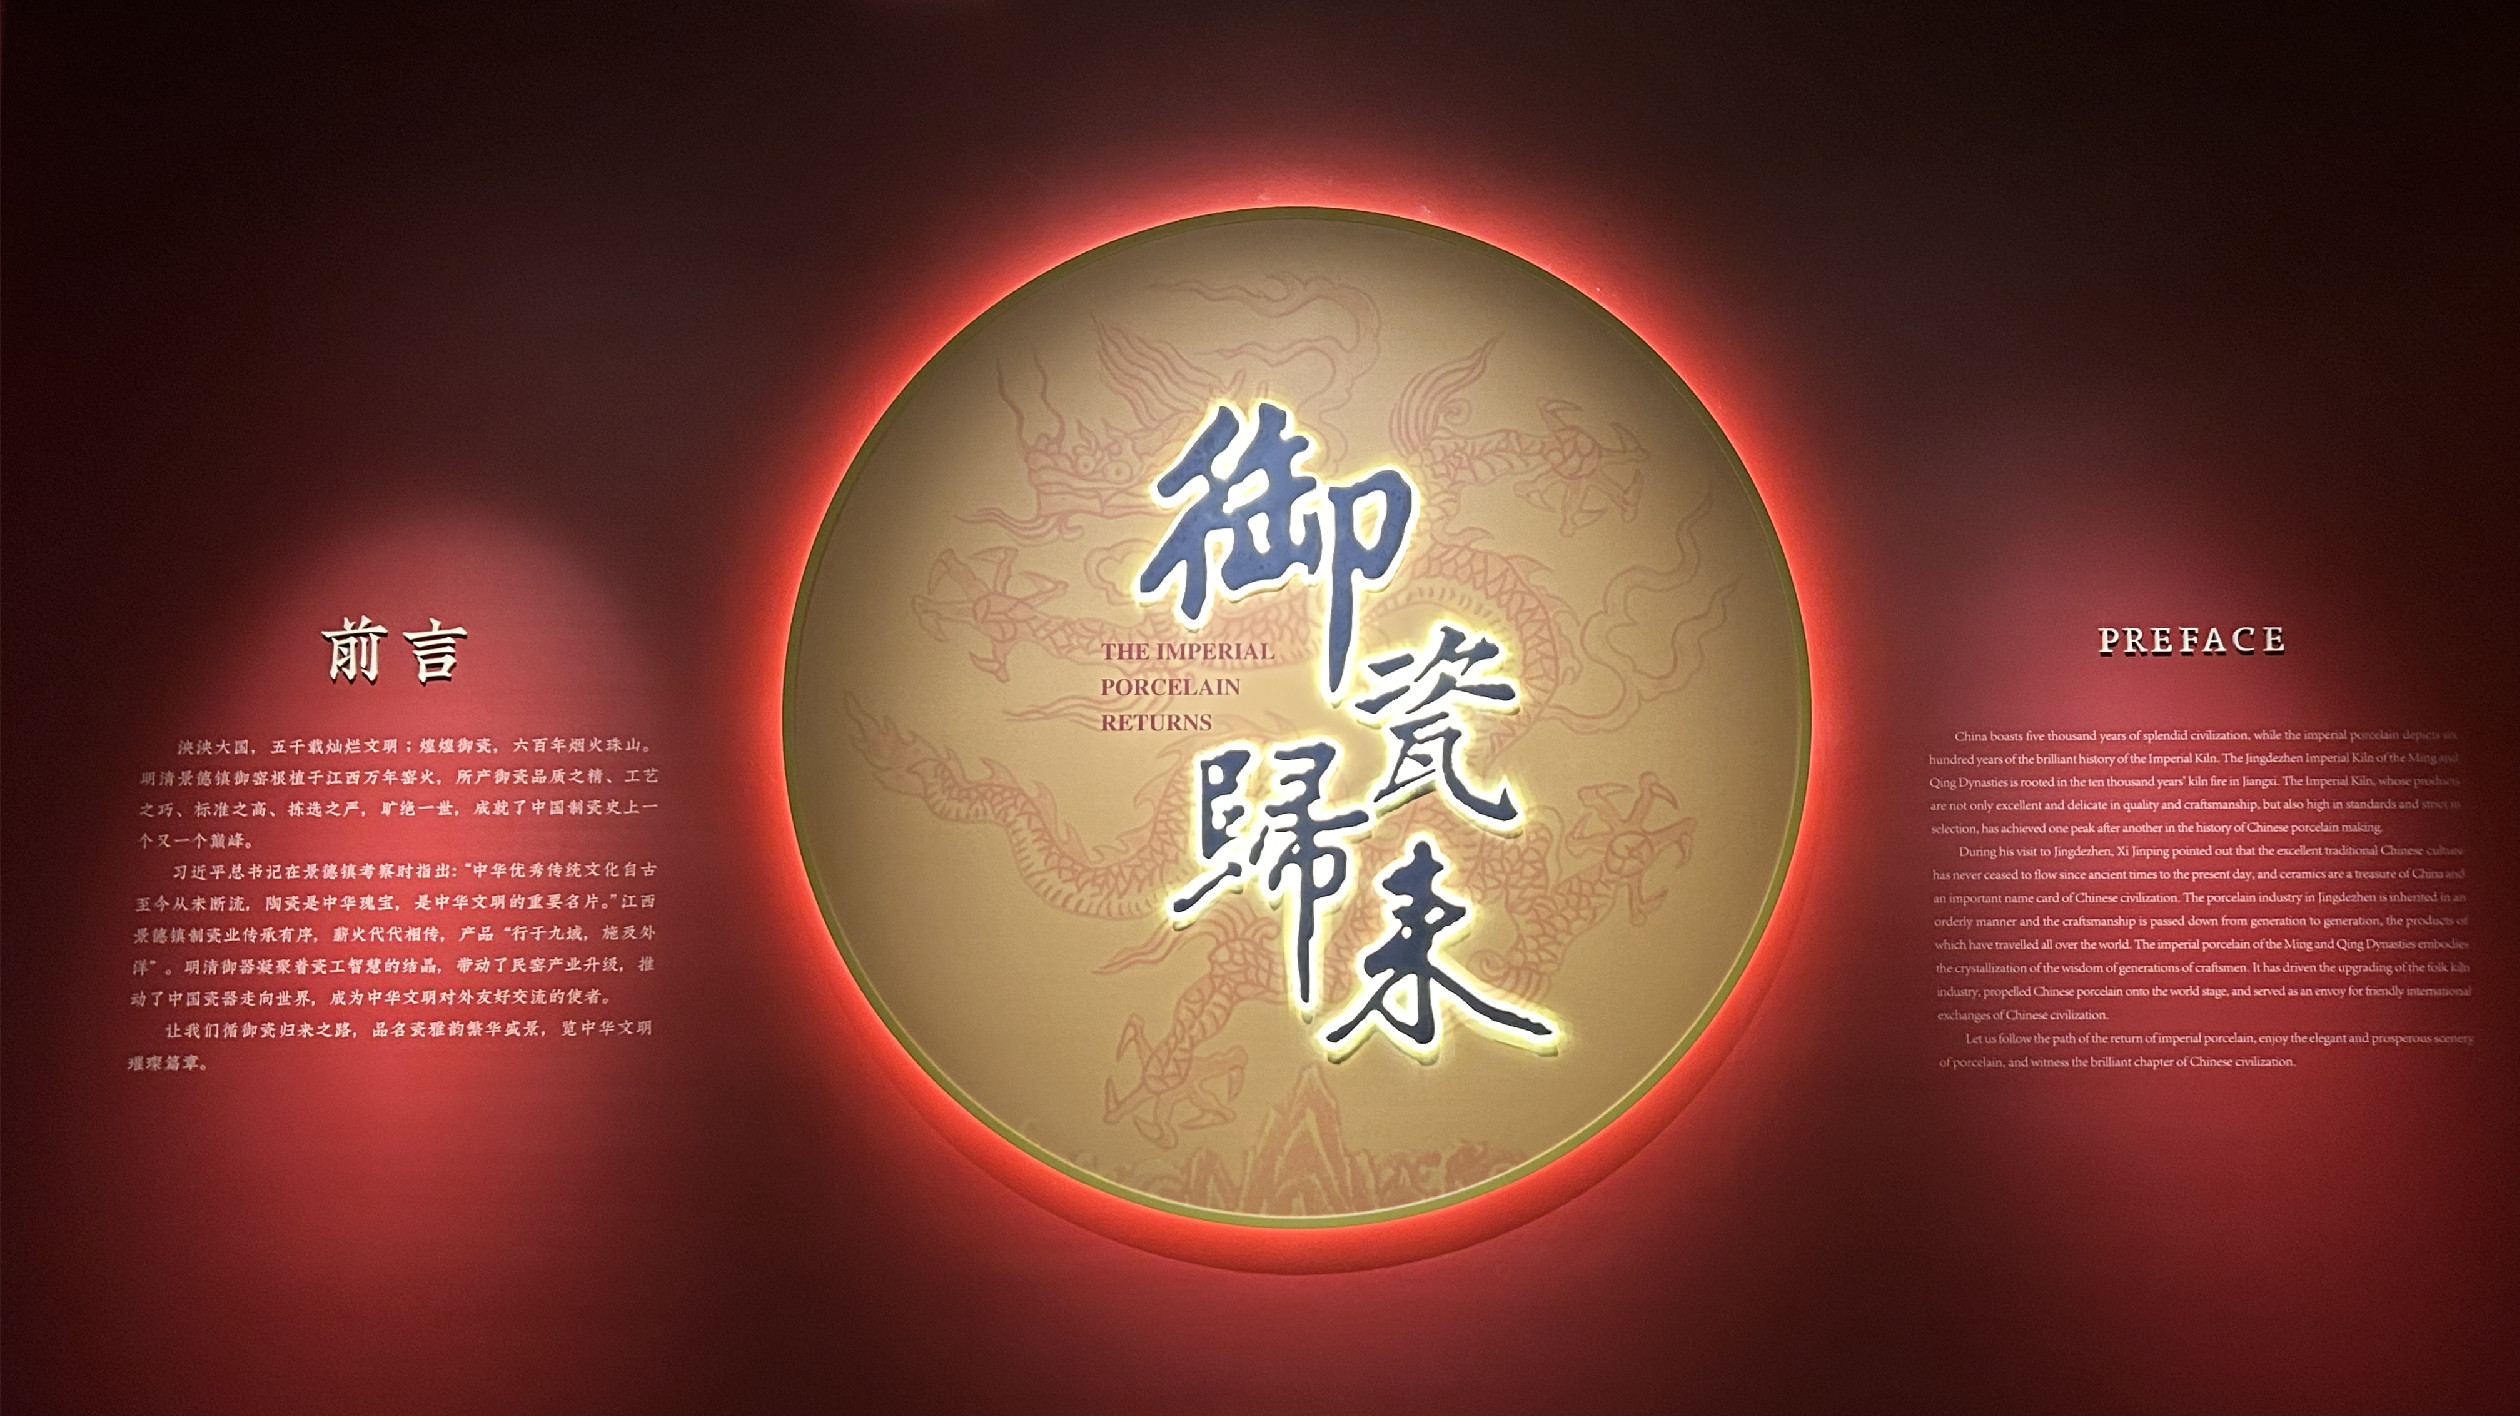 故宮陶瓷回歸故裏！江西省博物館「禦瓷歸來」特展將於1月8日正式開放